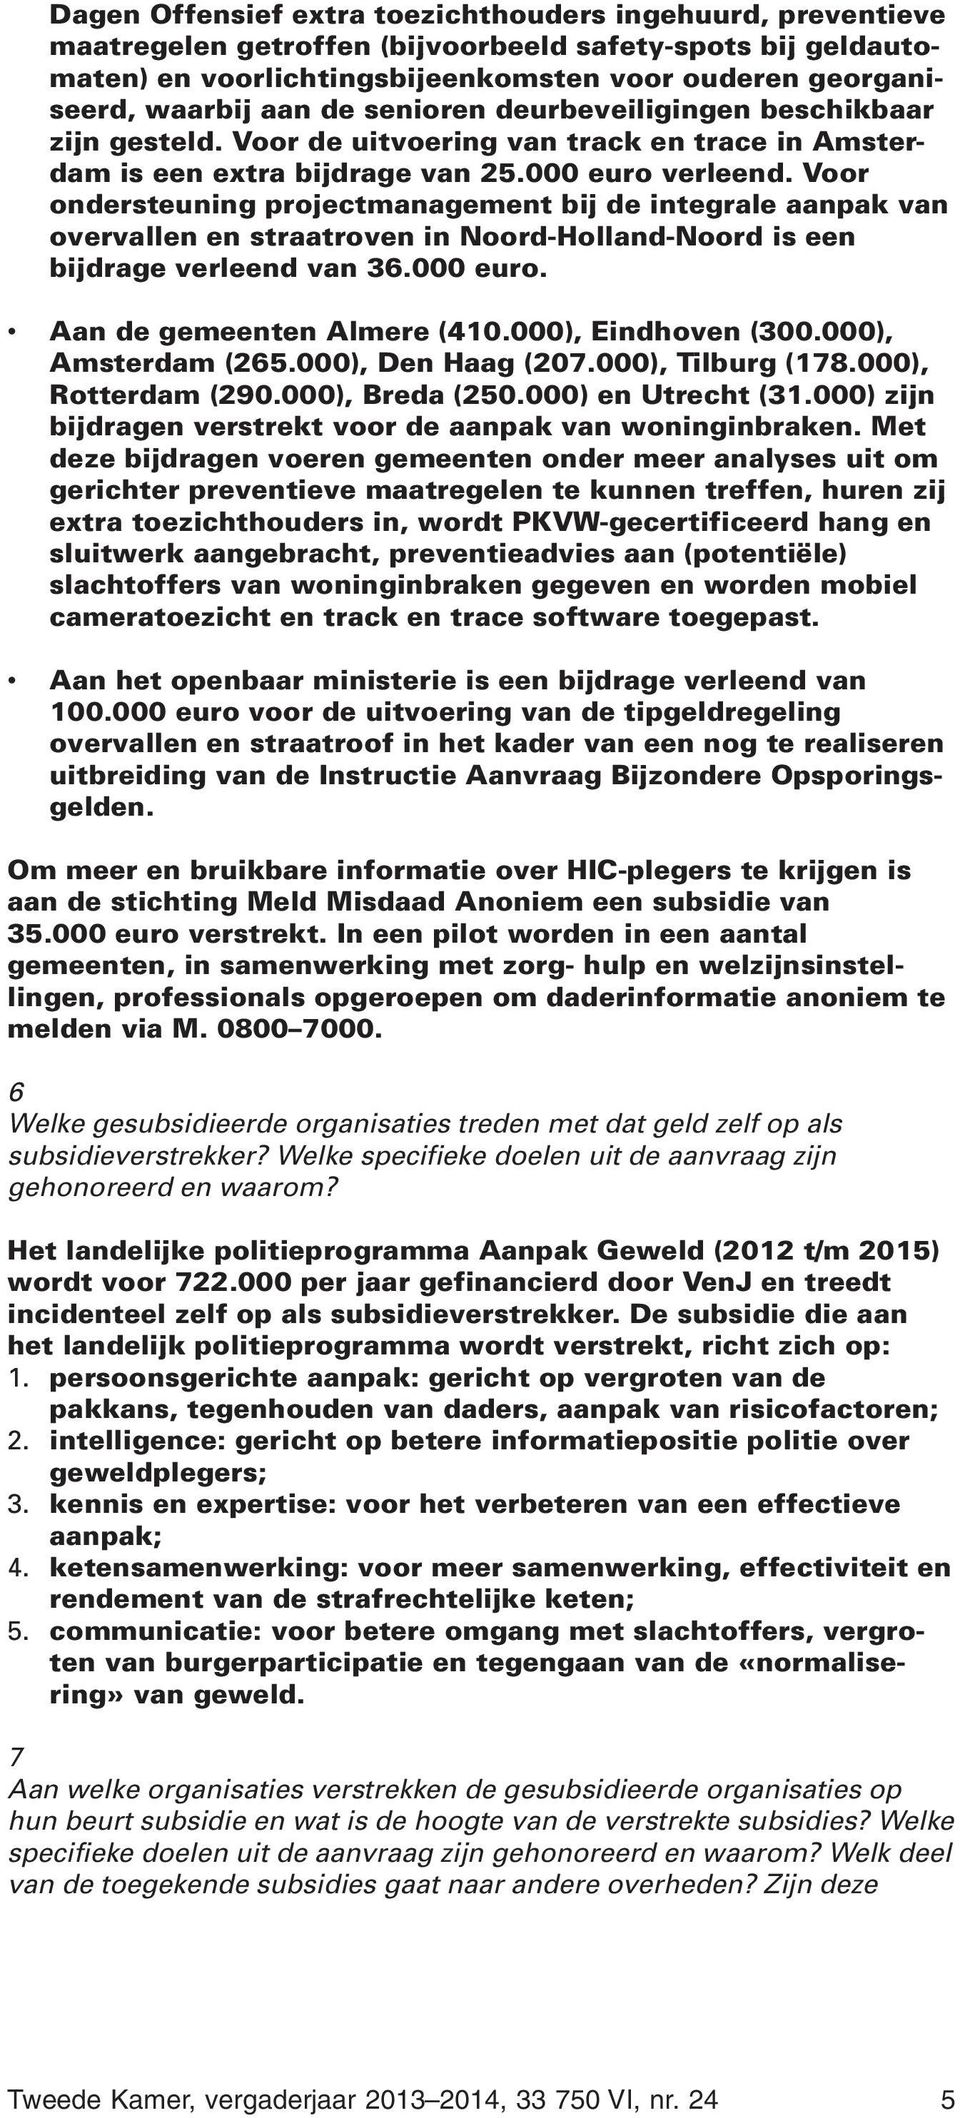 Voor ondersteuning projectmanagement bij de integrale aanpak van overvallen en straatroven in Noord-Holland-Noord is een bijdrage verleend van 36.000 euro. Aan de gemeenten Almere (410.